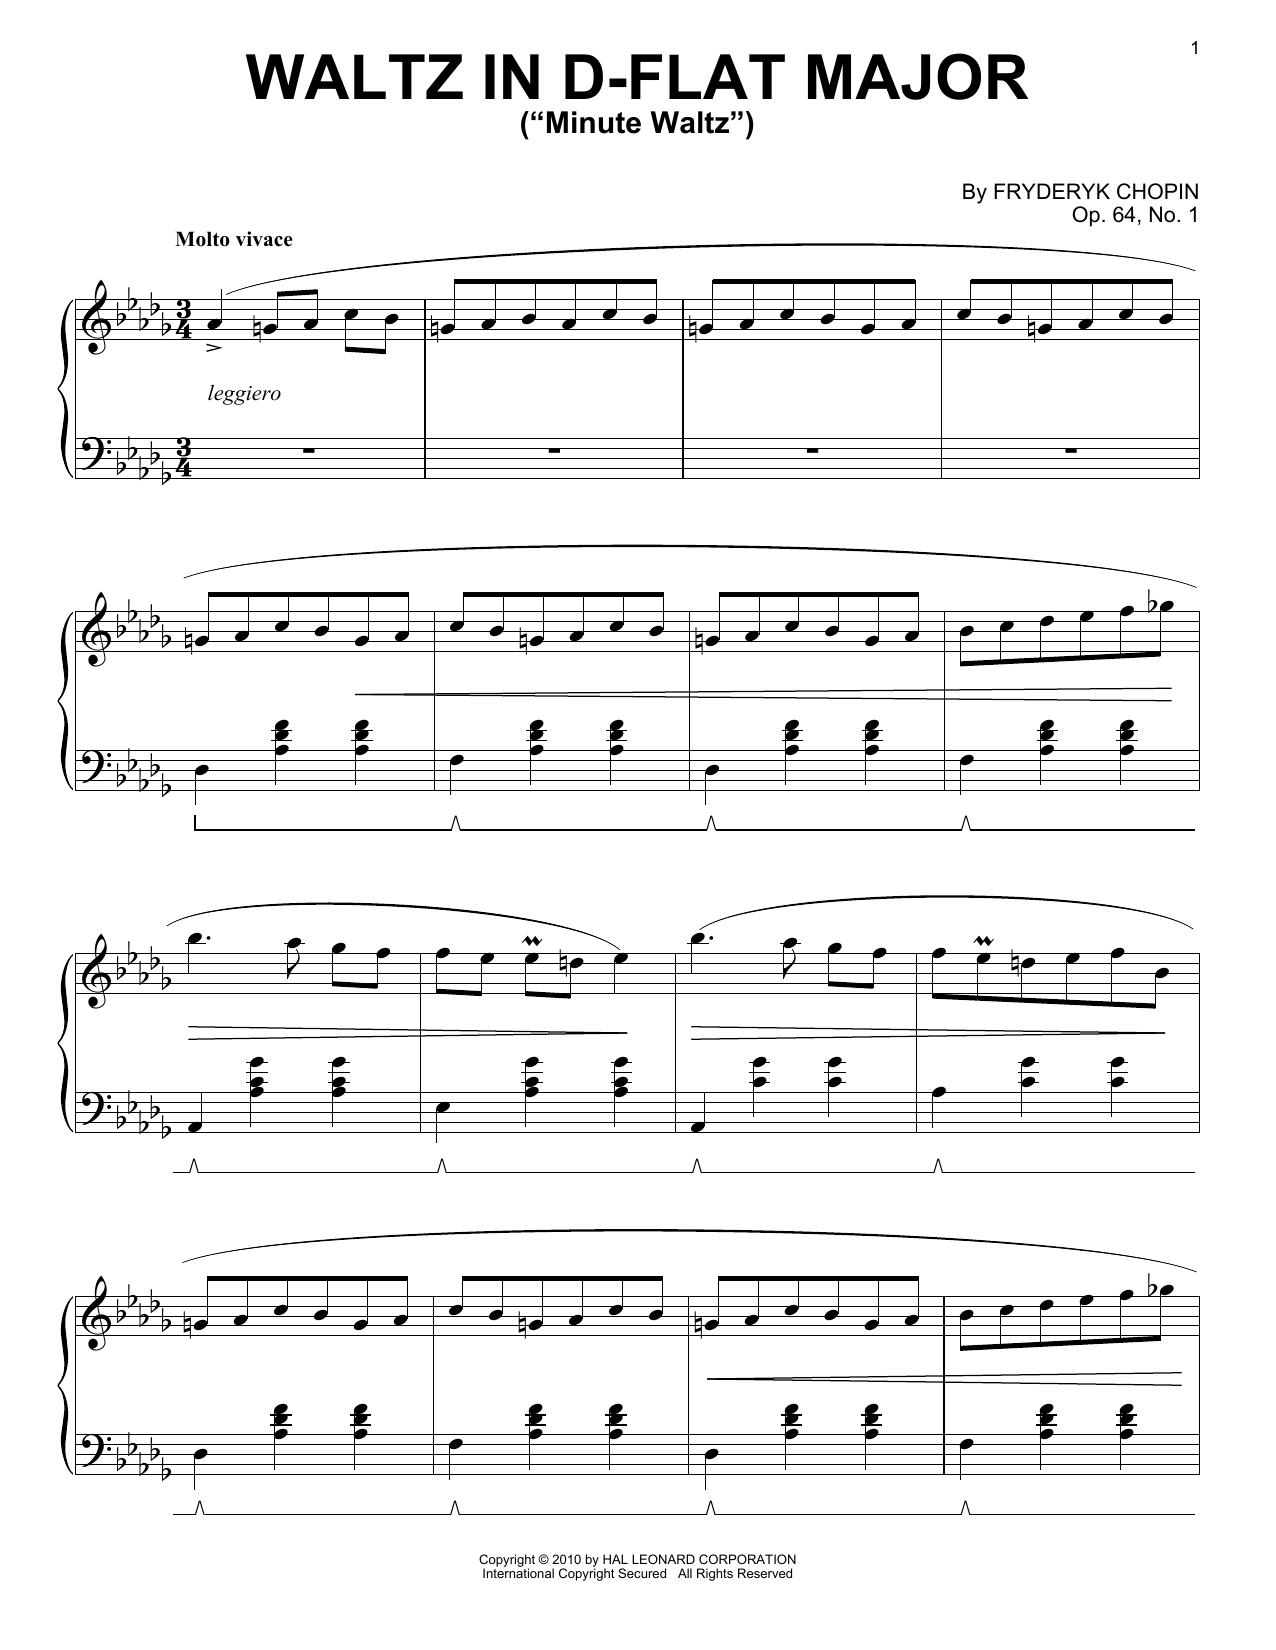 Fryderyk Chopin Waltz In D-flat Major 